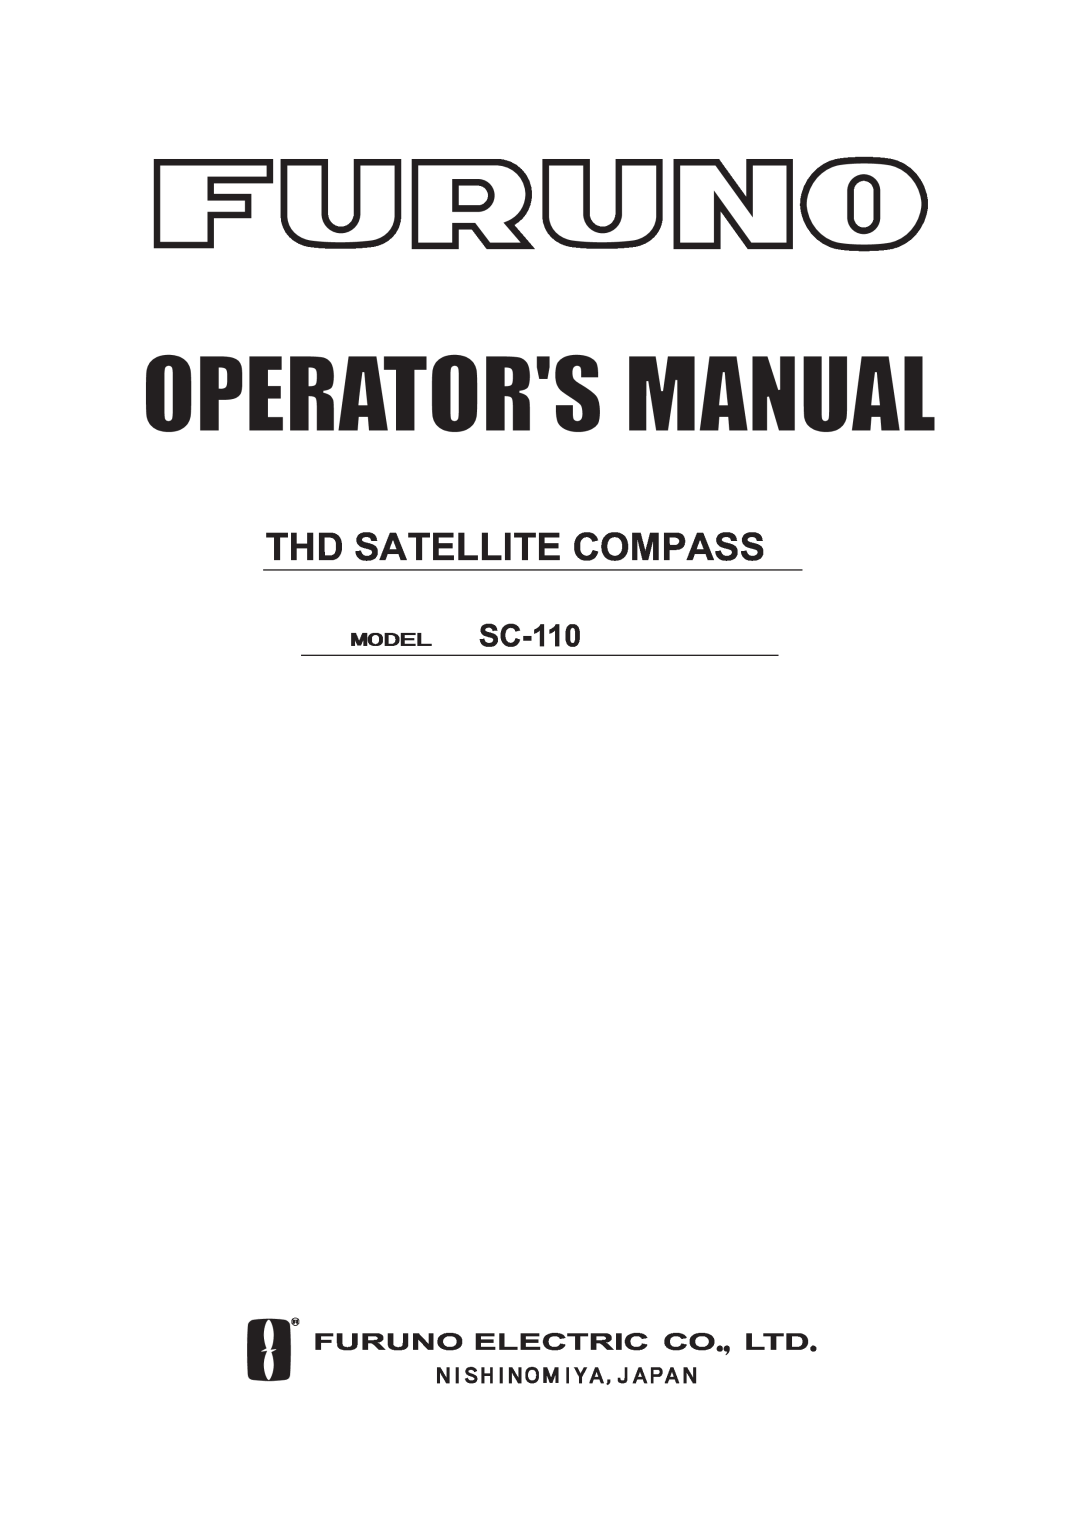 Furuno manual Operators Manual, Thd Satellite Compass, MODEL SC-110 